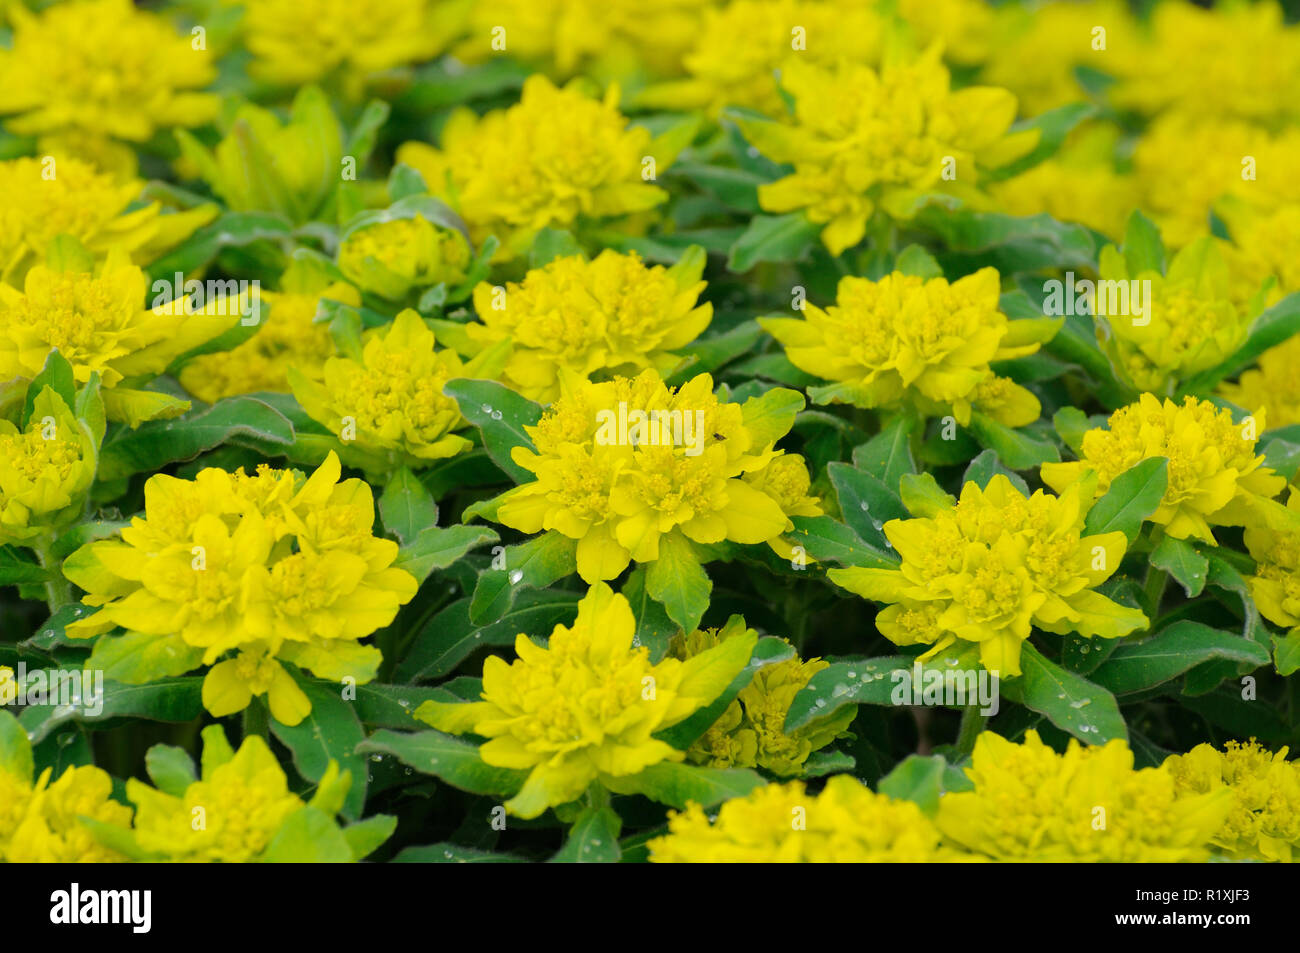 Gelb-grüne frische Blumen in Fulda in Hessen, Deutschland Stockfotografie -  Alamy